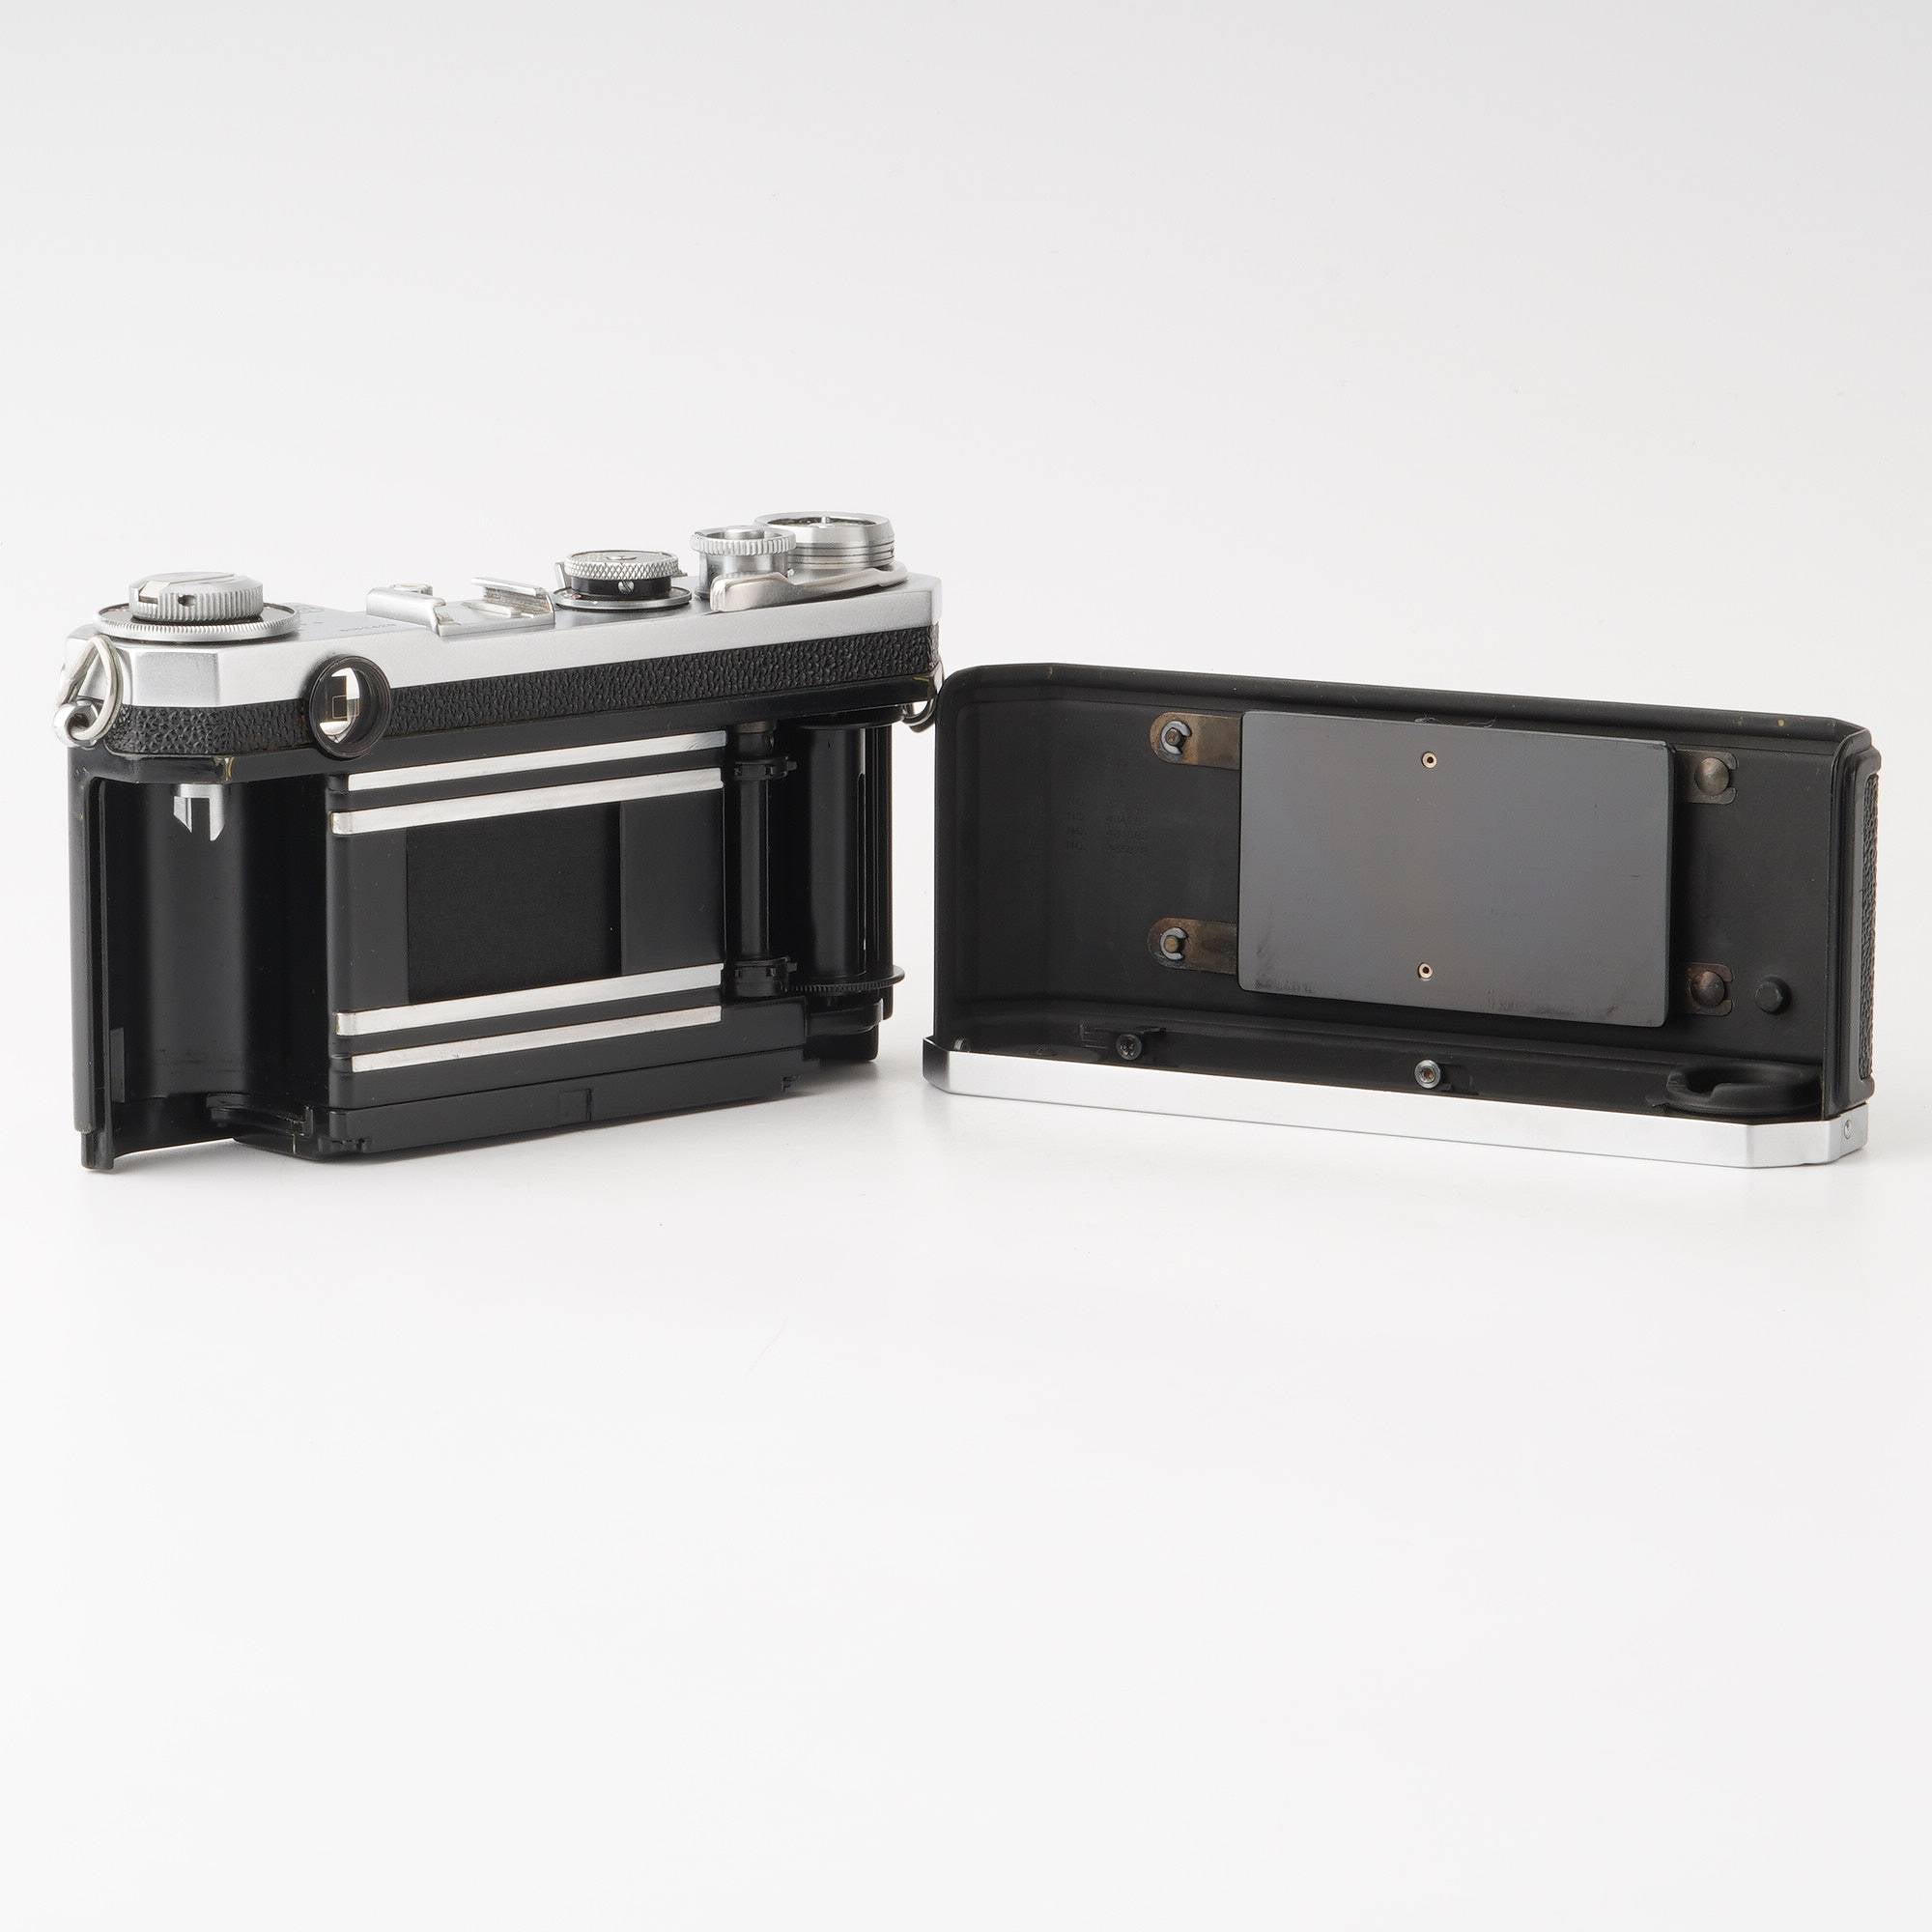 ニコン Nikon S2 ブラックダイヤル + NIKKOR-S・C 5cm F1.4 #9233-